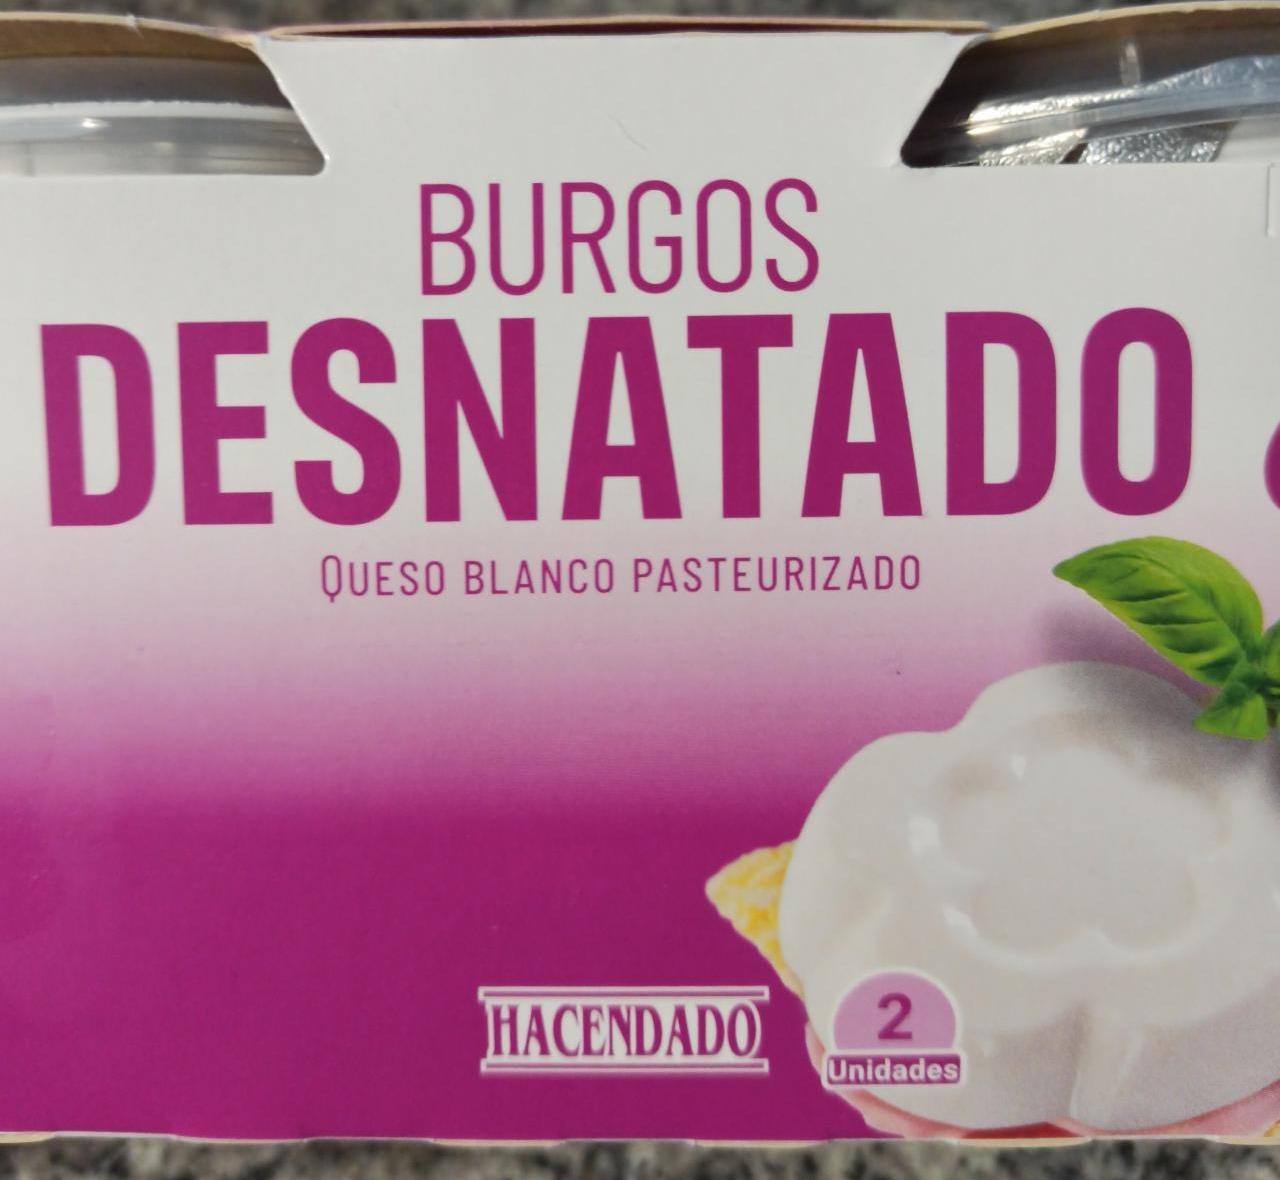 Фото - Burgos desnatado 0% Hacendado